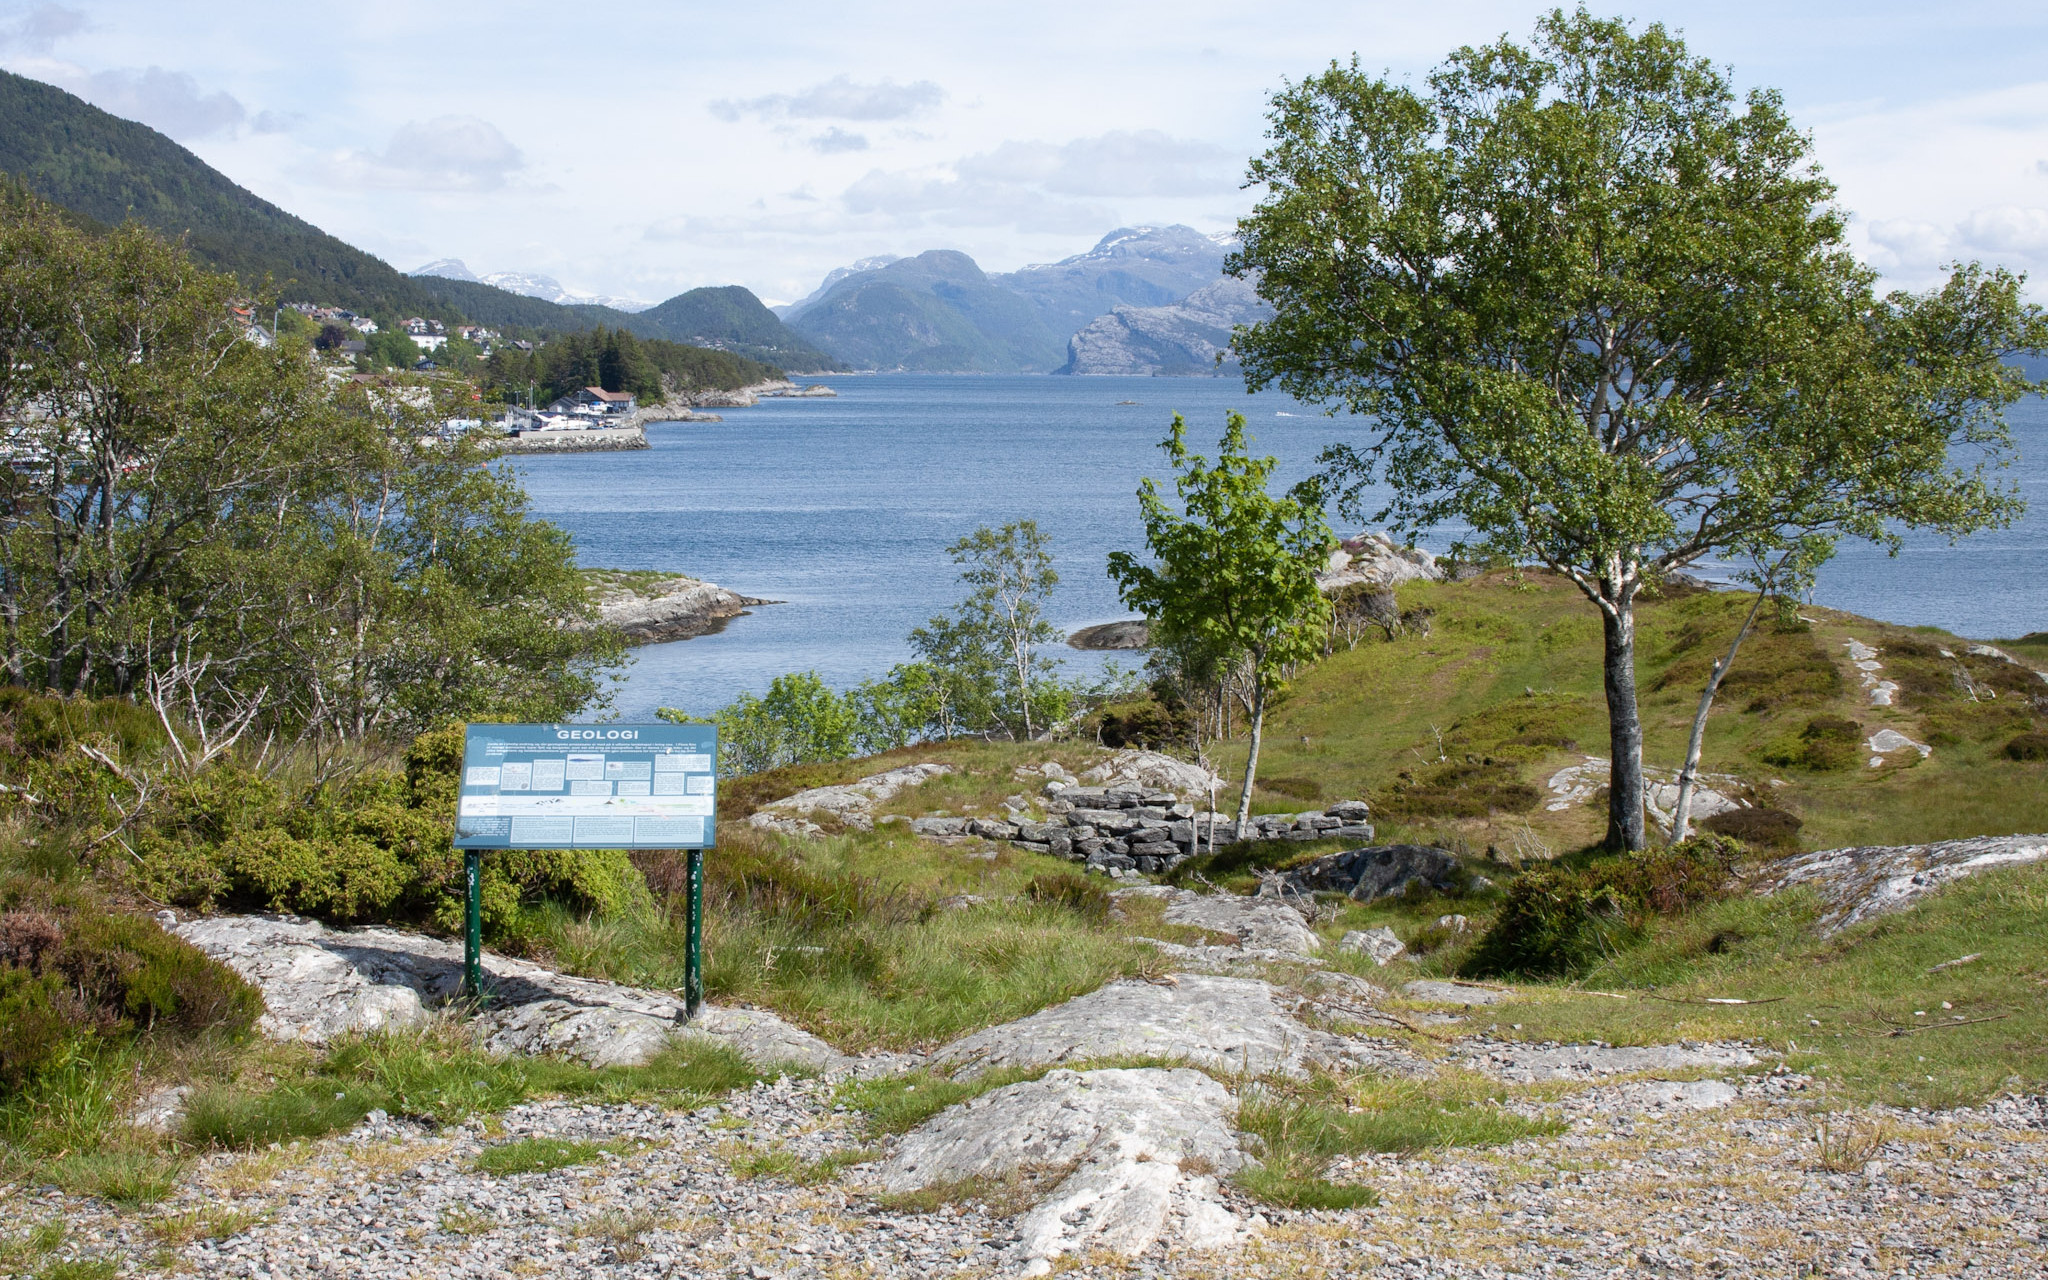 Utsikt over Brendøya, med hustufter, skilt om geografi og bjørketrær. Hav og fjell i bakgrunn.